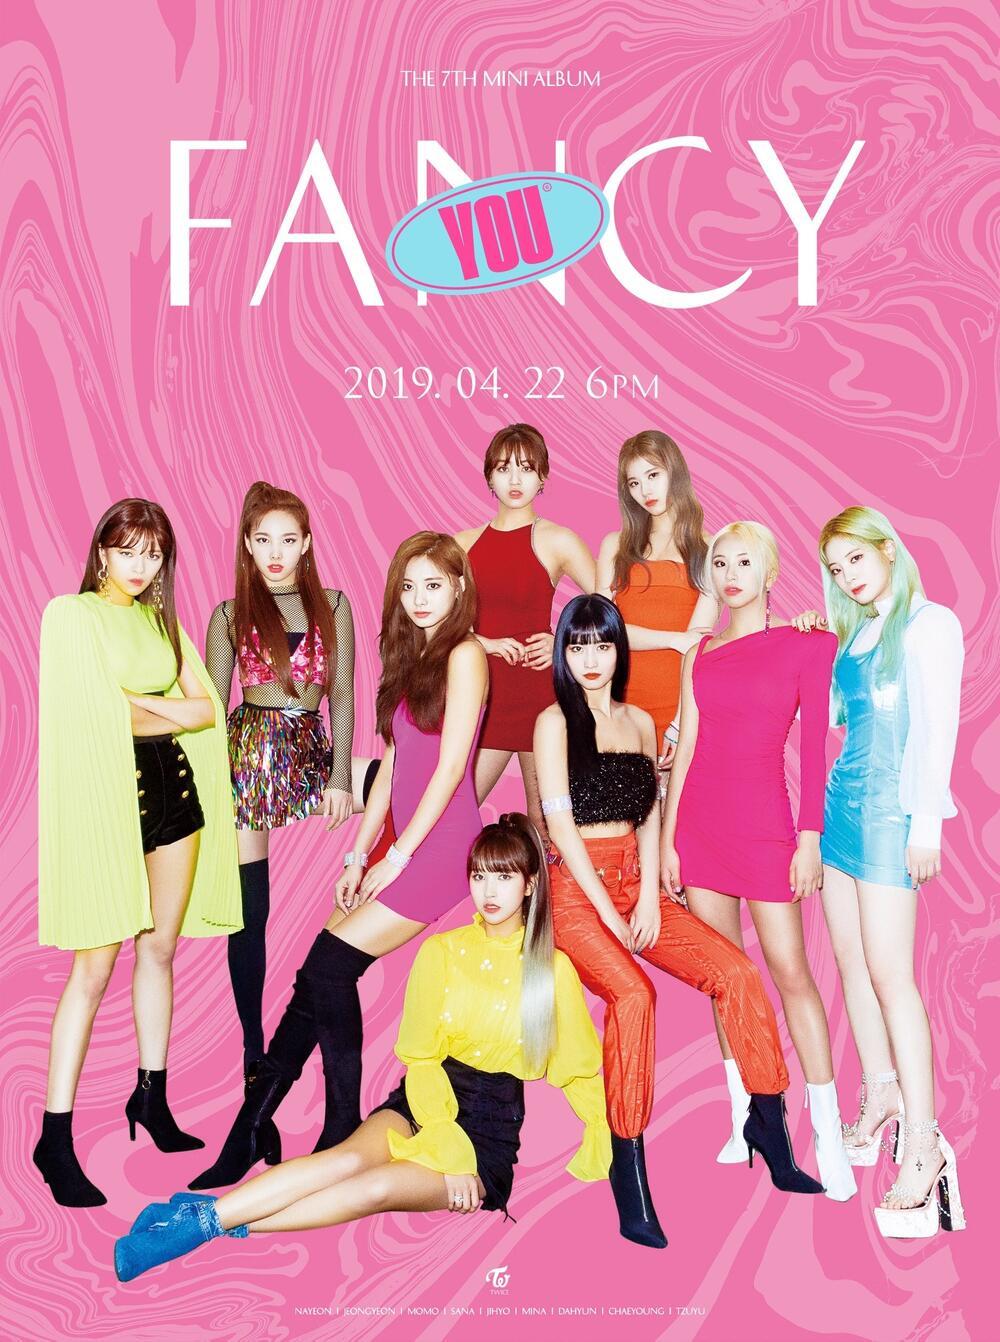  
Poster thiết kế màu mè, dễ nhìn thấy lỗi sai nhưng JYP vẫn phát hành. (Ảnh: Twitter)